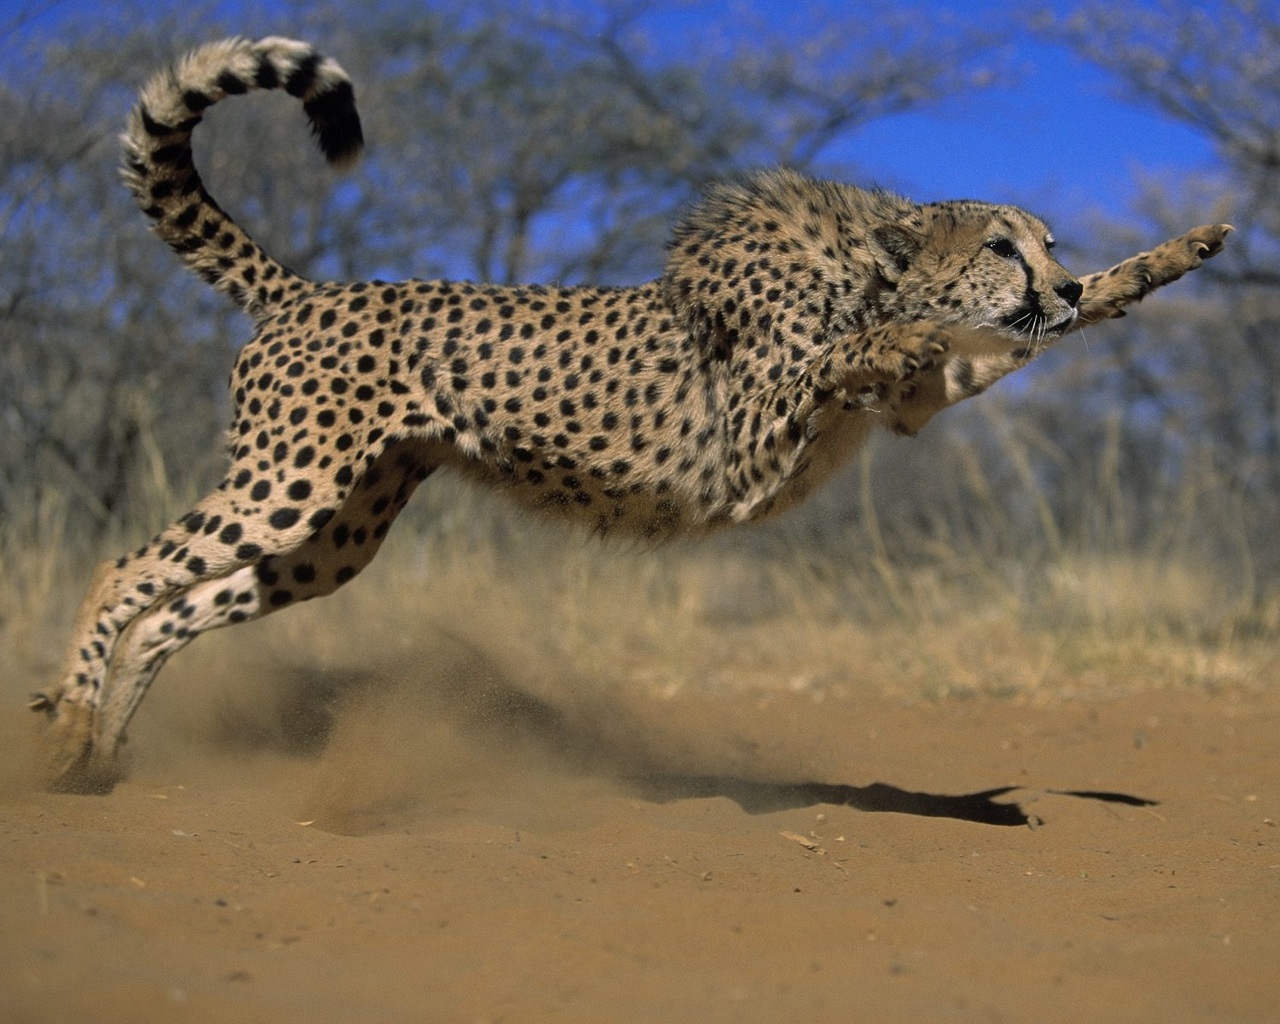 Free download wallpaper Cheetah, Animal on your PC desktop